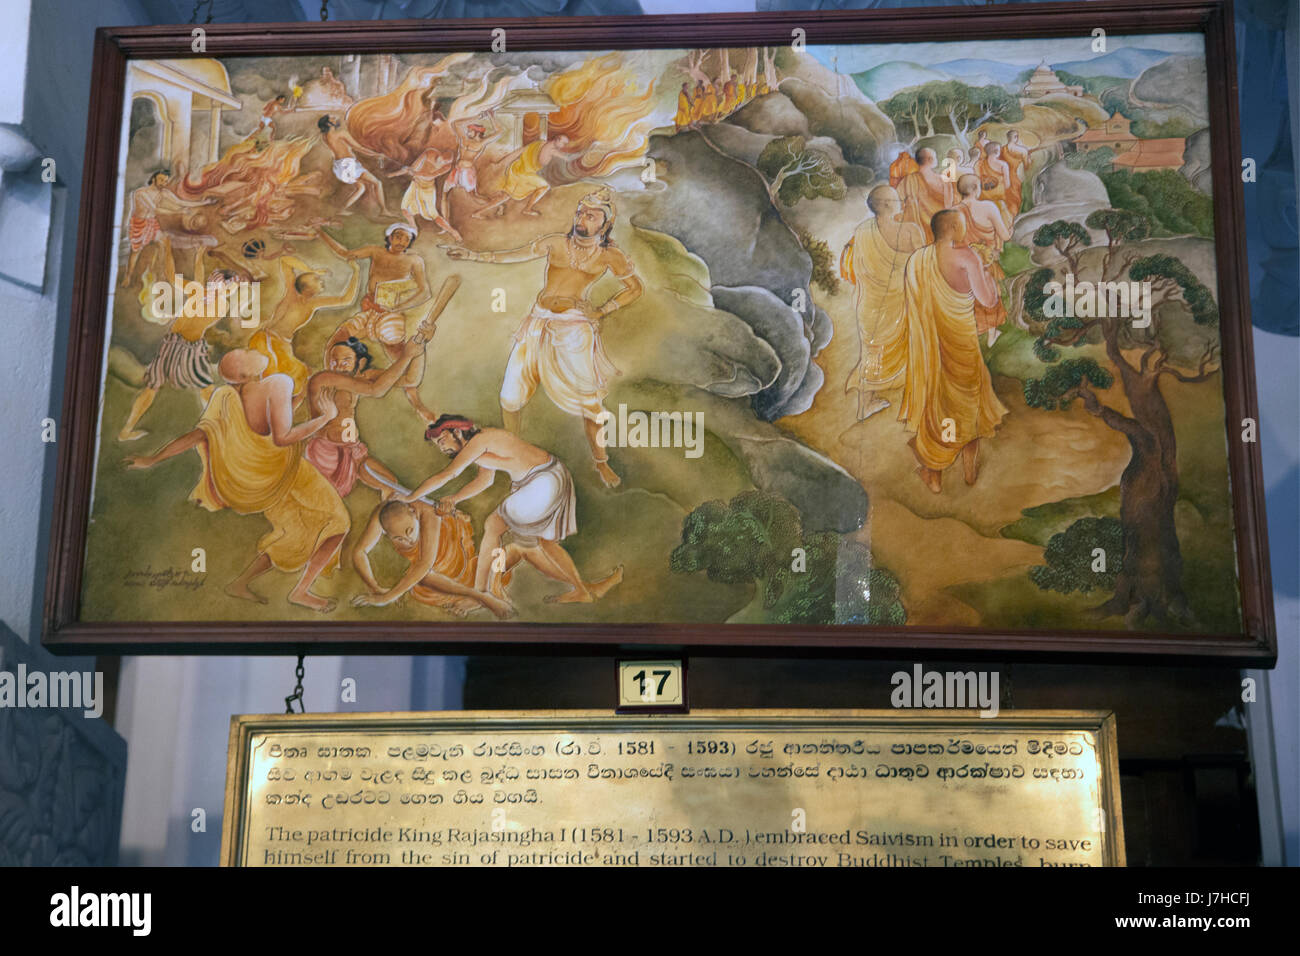 Kandy Sri Lanka Tempio del Sacro Dente Sri Dalada pittura del Museo della Storia della Reliquia del Dente - Il parricidio re Rajasingha I (1581 - 1593 A.D) abbracciato Saivism al fine di salvare se stesso dal peccato di parricidio e ha iniziato a distruggere i templi buddisti Foto Stock